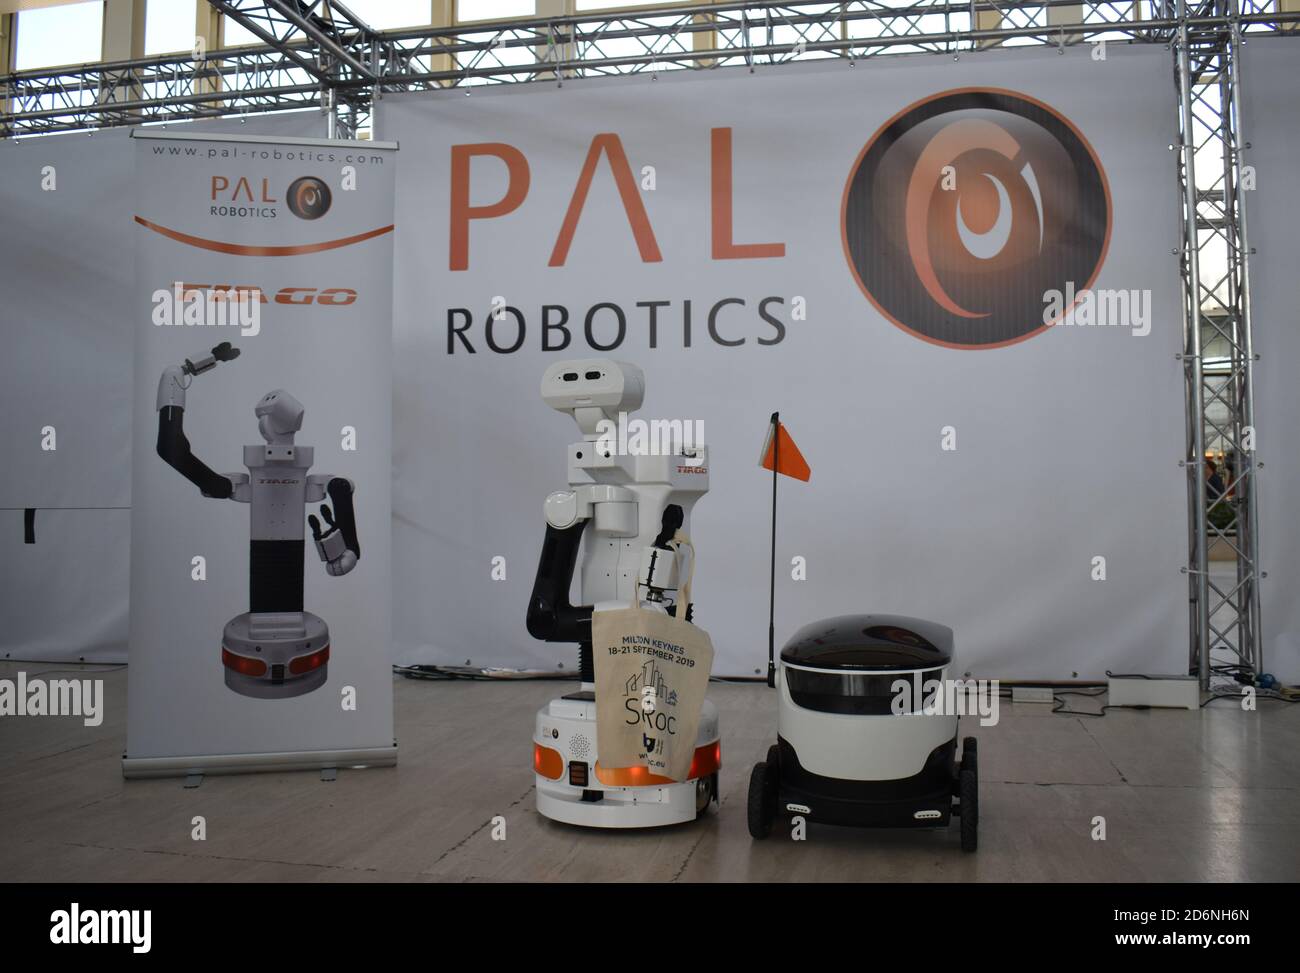 Robots au SciRoc Challenge 2019, qui s'est tenu au centre:mk en septembre 2019. Bots de Bro ! Un robot Tiago et un robot de livraison Starship. Banque D'Images